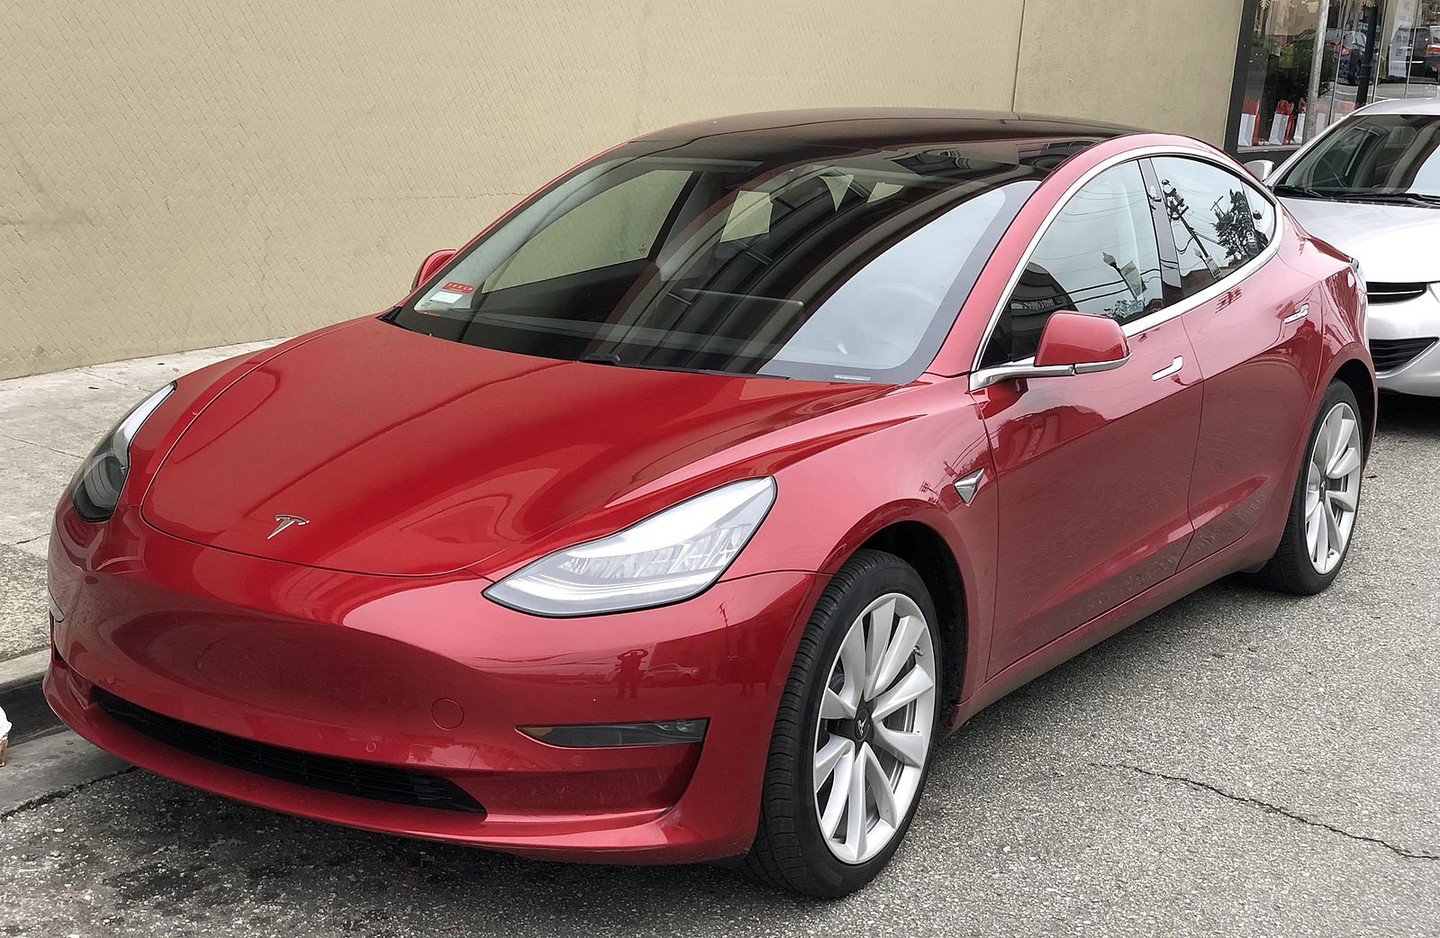 Tesla inşa büyük bir gölgelik üretimi için Model 3